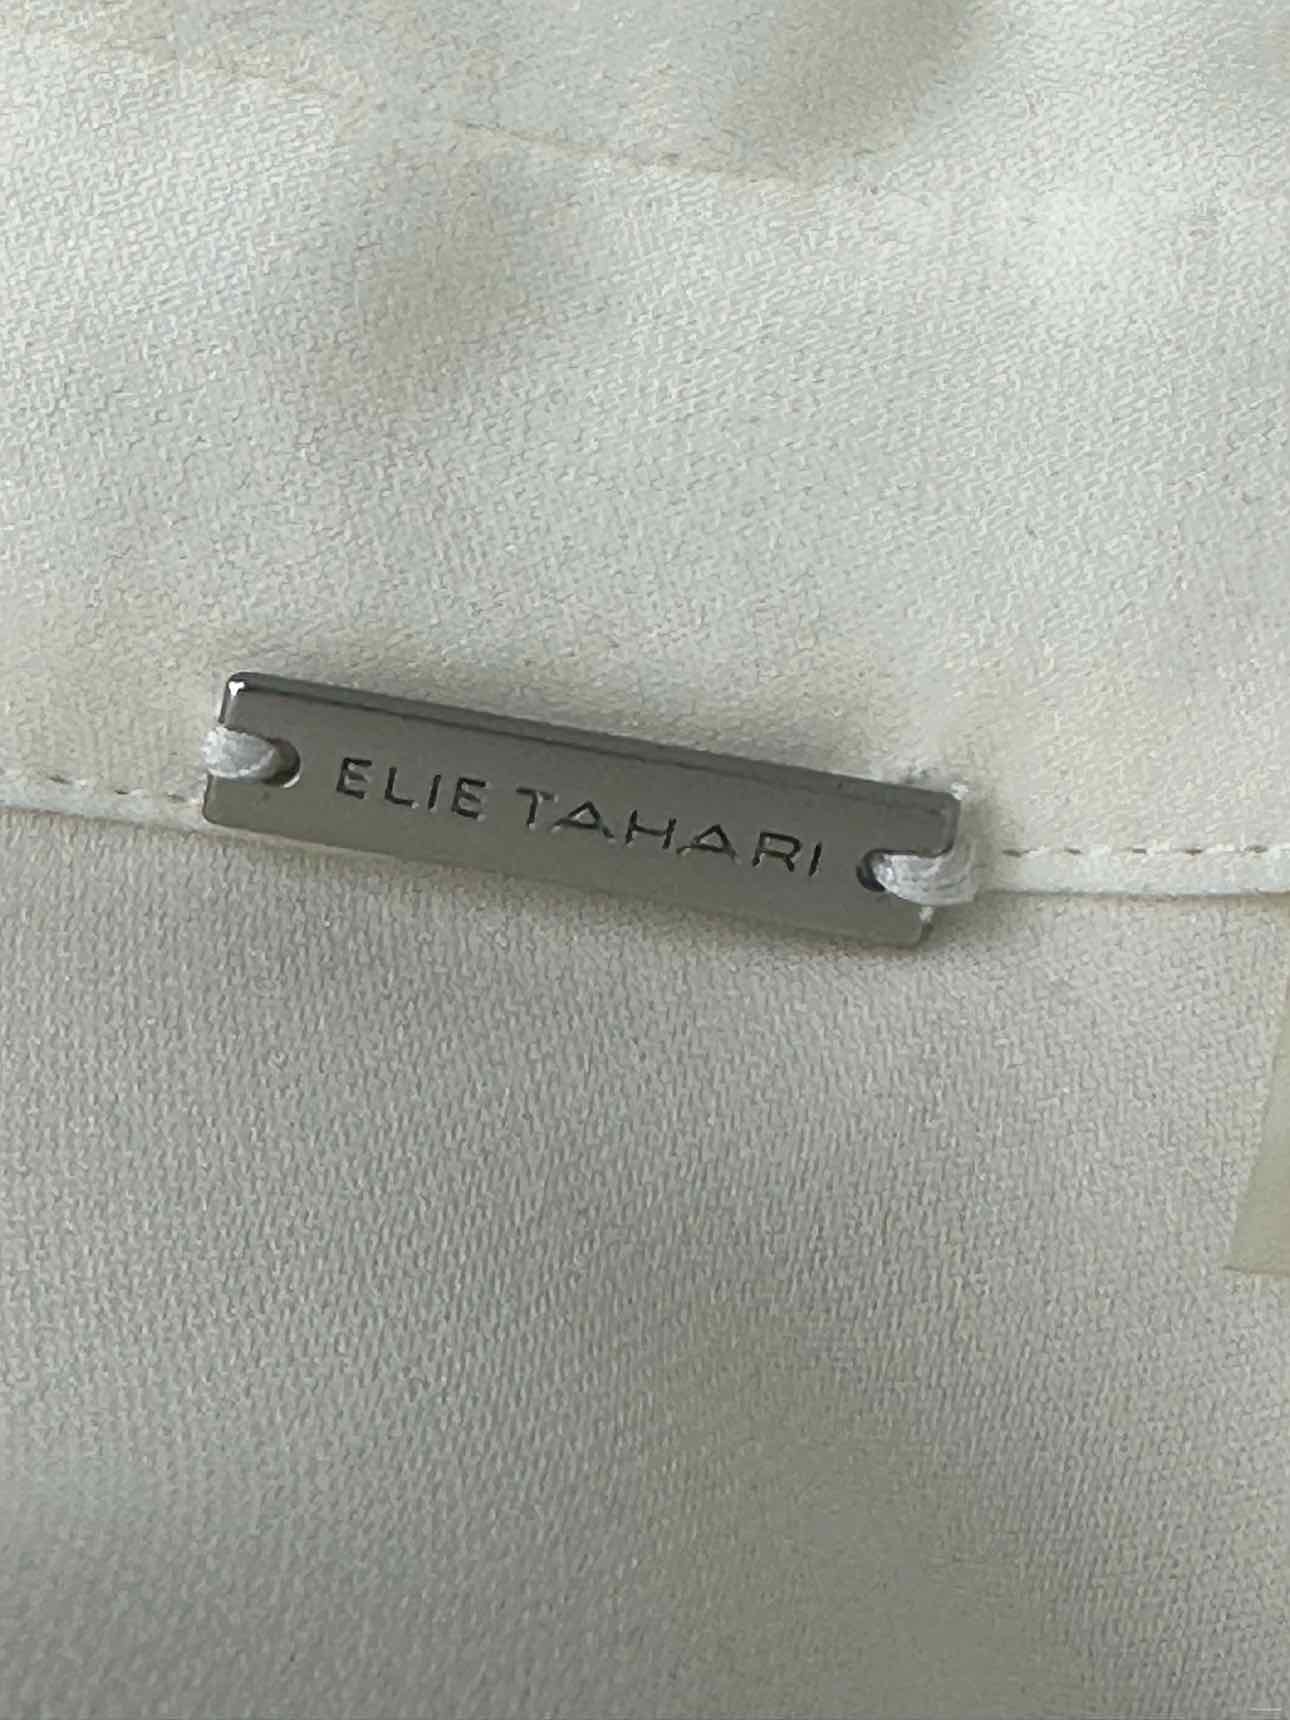 ELIE TAHARI Cream 100% Silk Button Down, brand tag